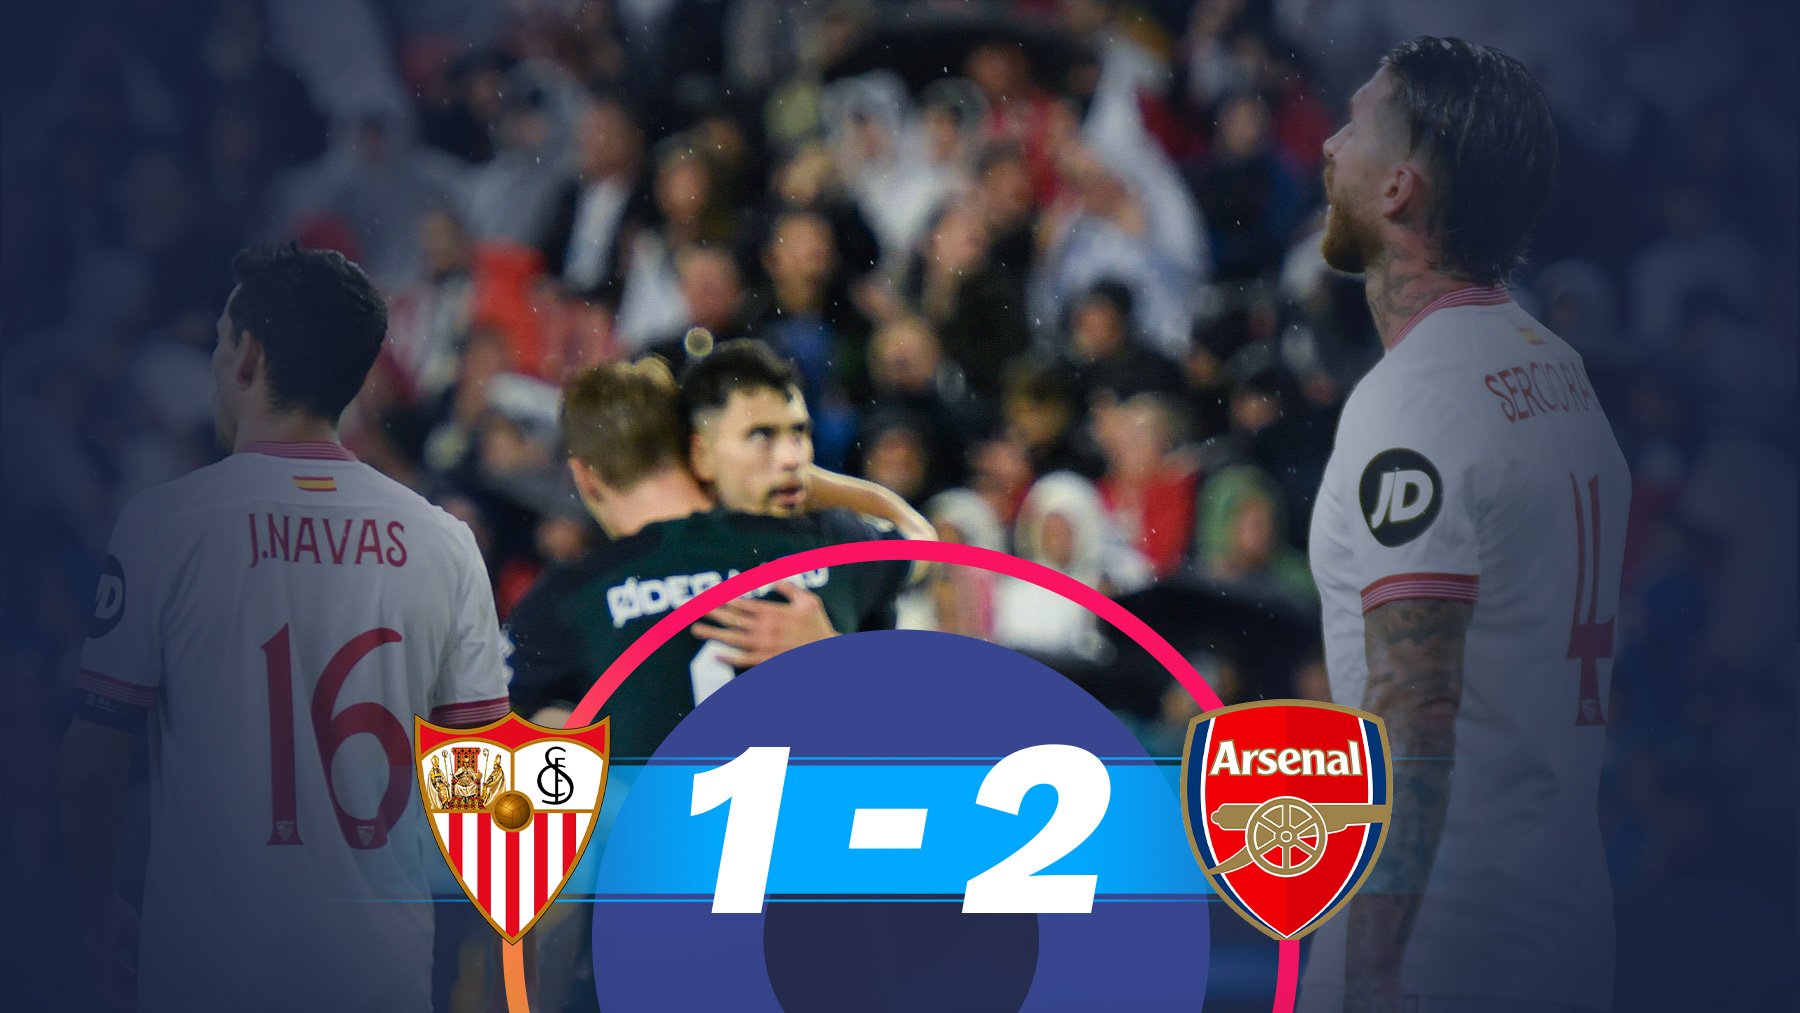 El Sevilla cayó ante el Arsenal en el Pizjuán.